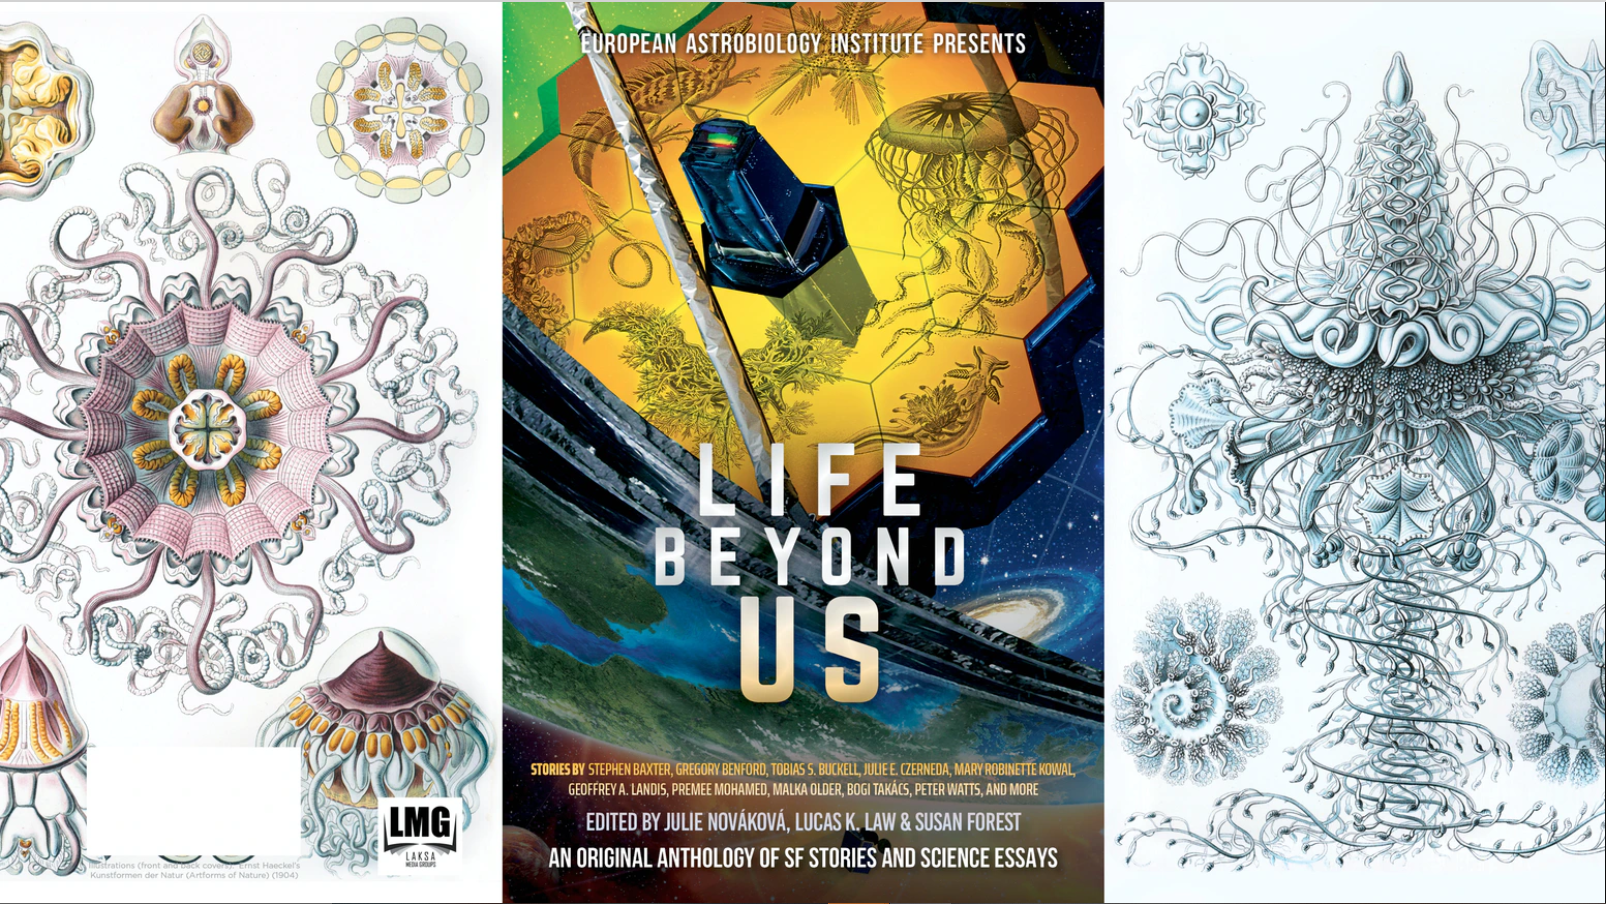 L'Institut Européen d'Astrobiologie dévoile une Anthologie sur la vie extraterrestre